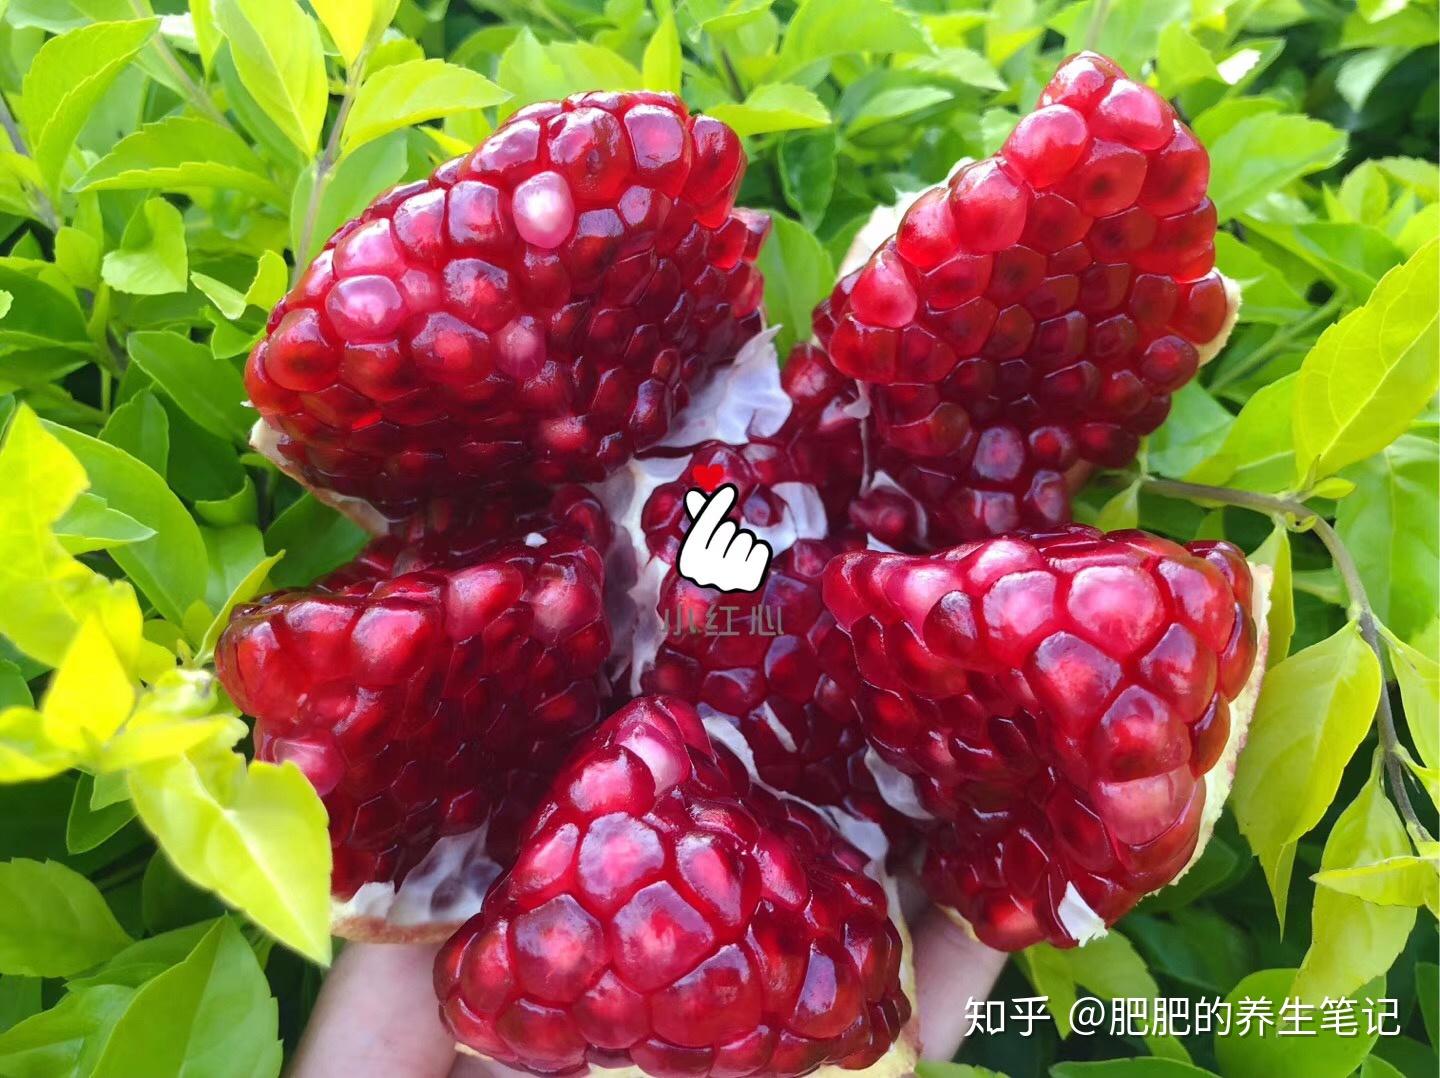 云南宾川葡萄在沪举办推介会 “宾果儿”三大品种齐亮相 | 国际果蔬报道